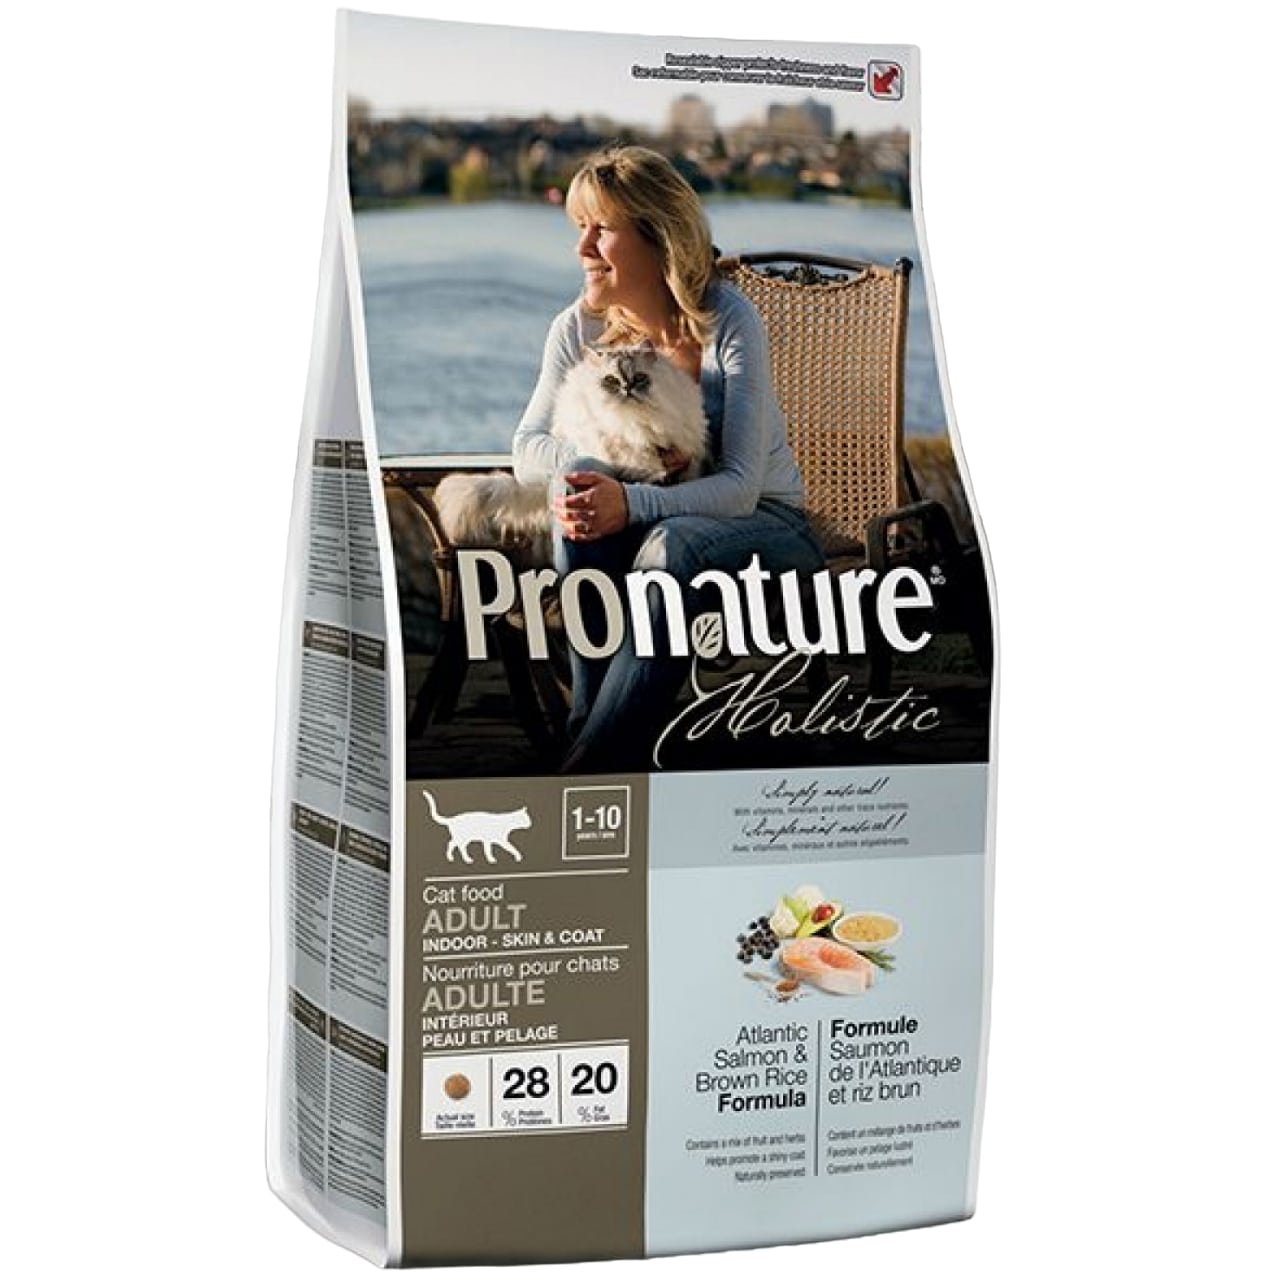 Сухий корм для котів Pronature Holistic Atlantic Salmon & Brown Rice 2.72 кг - фото 1